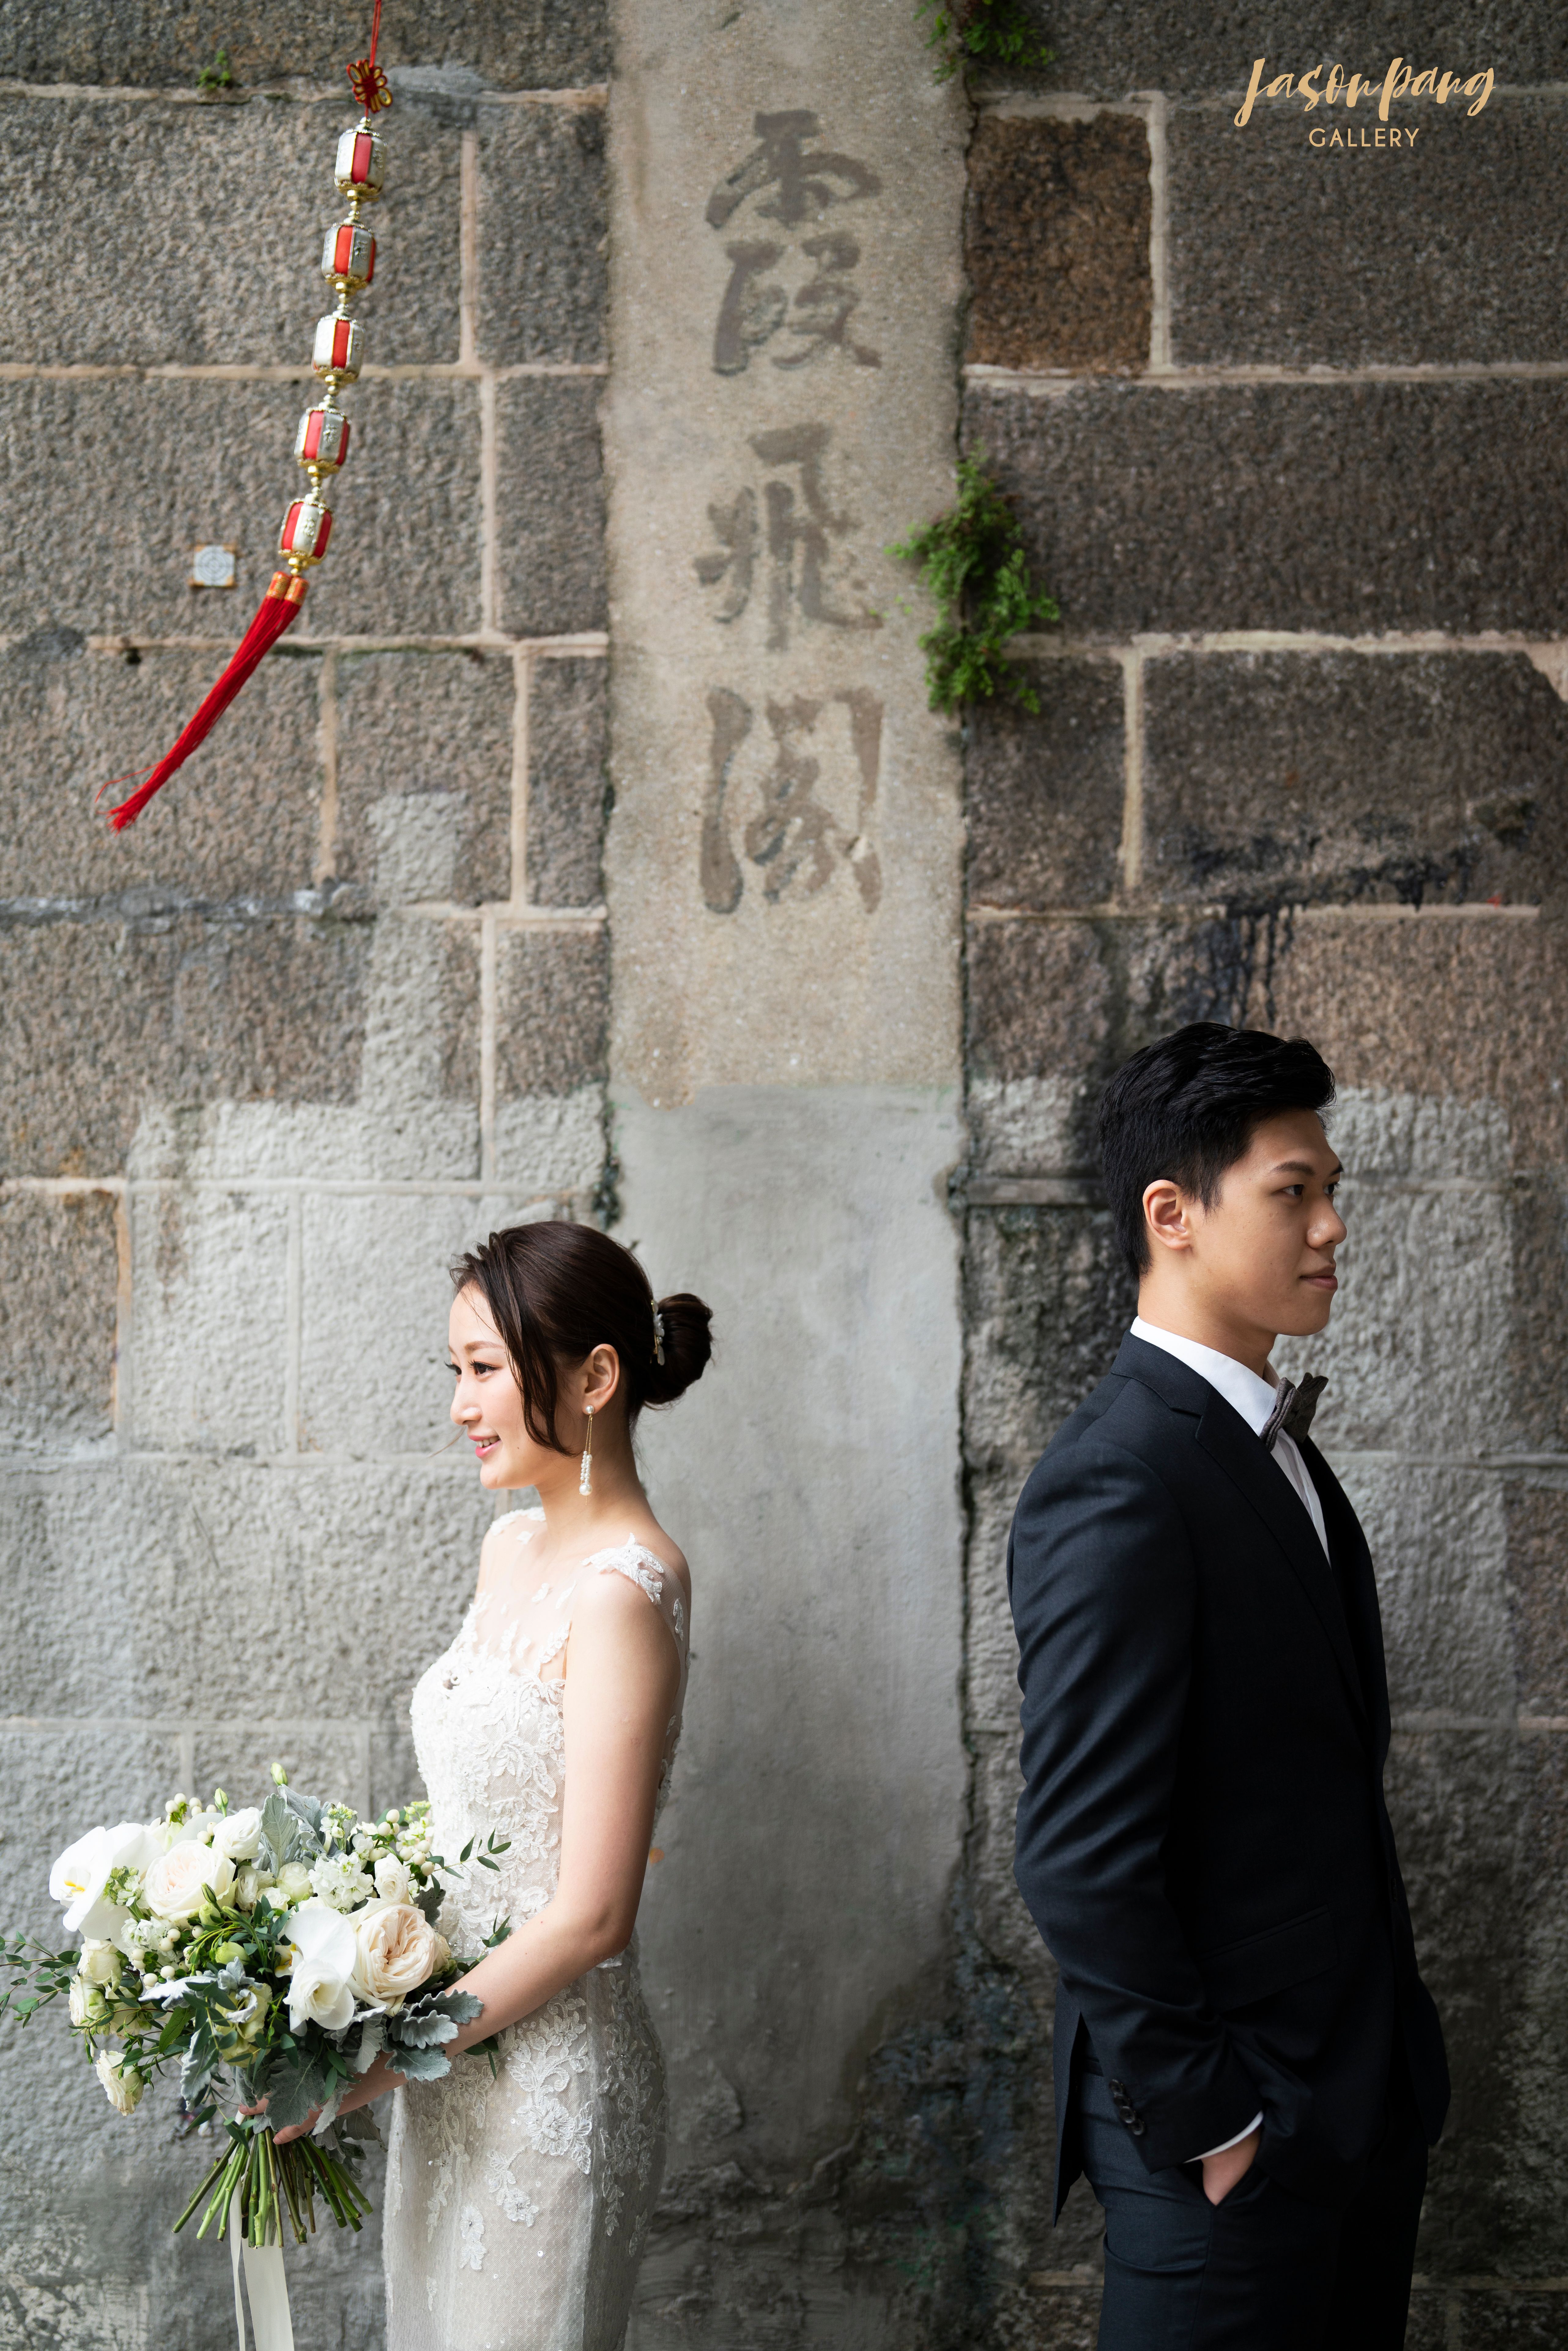 香港Top10婚禮攝影師專訪